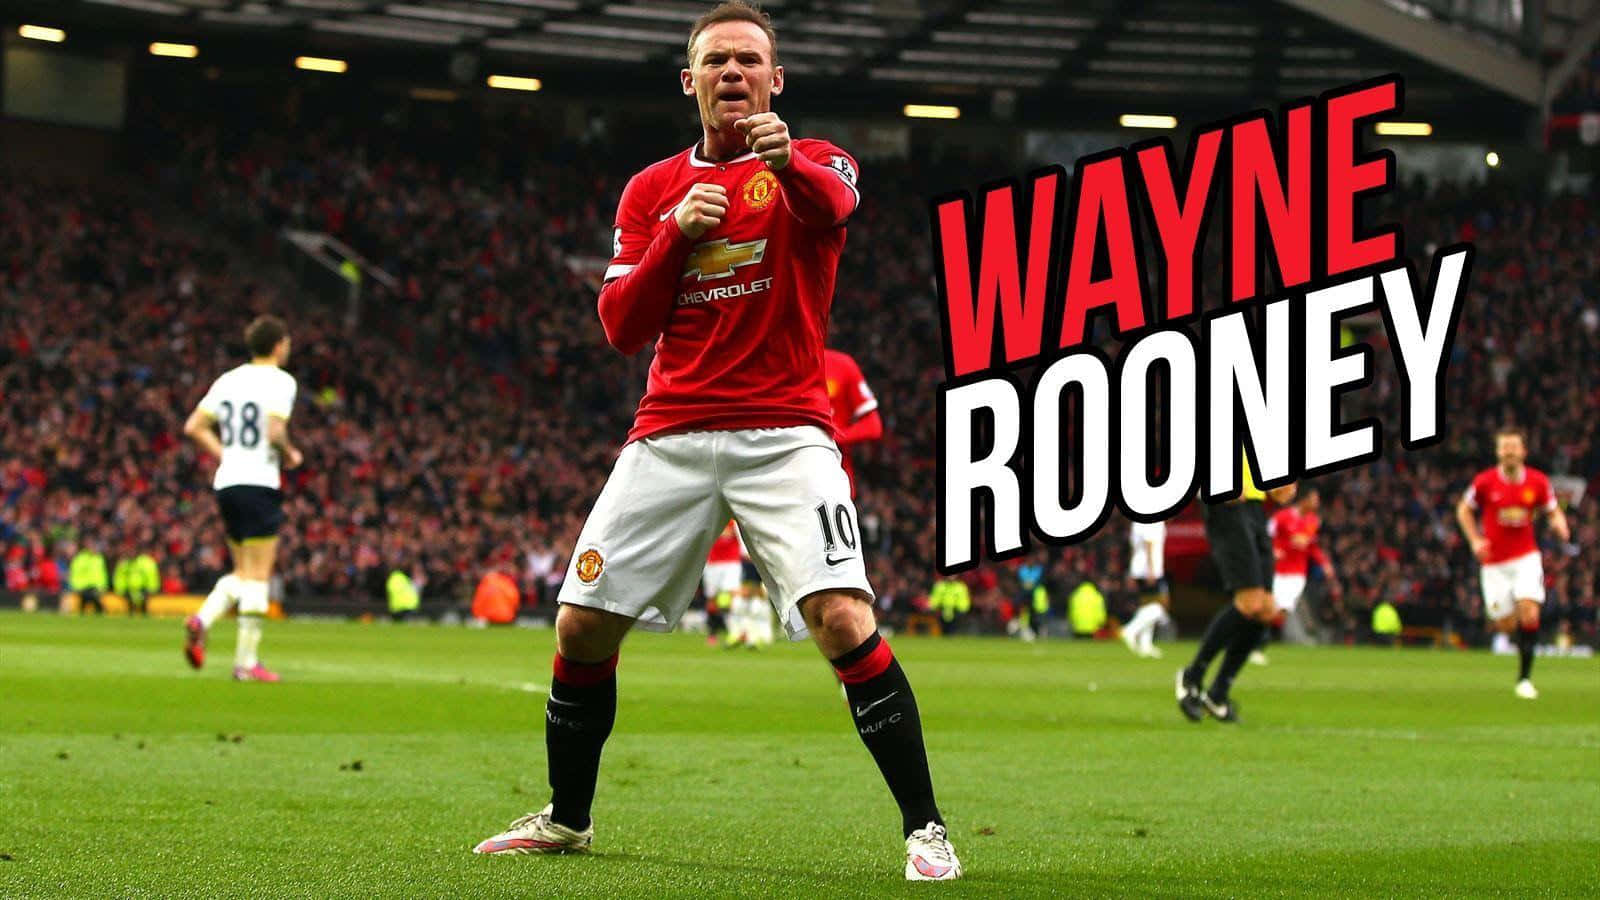 Wayne Rooney In Stadium Picture